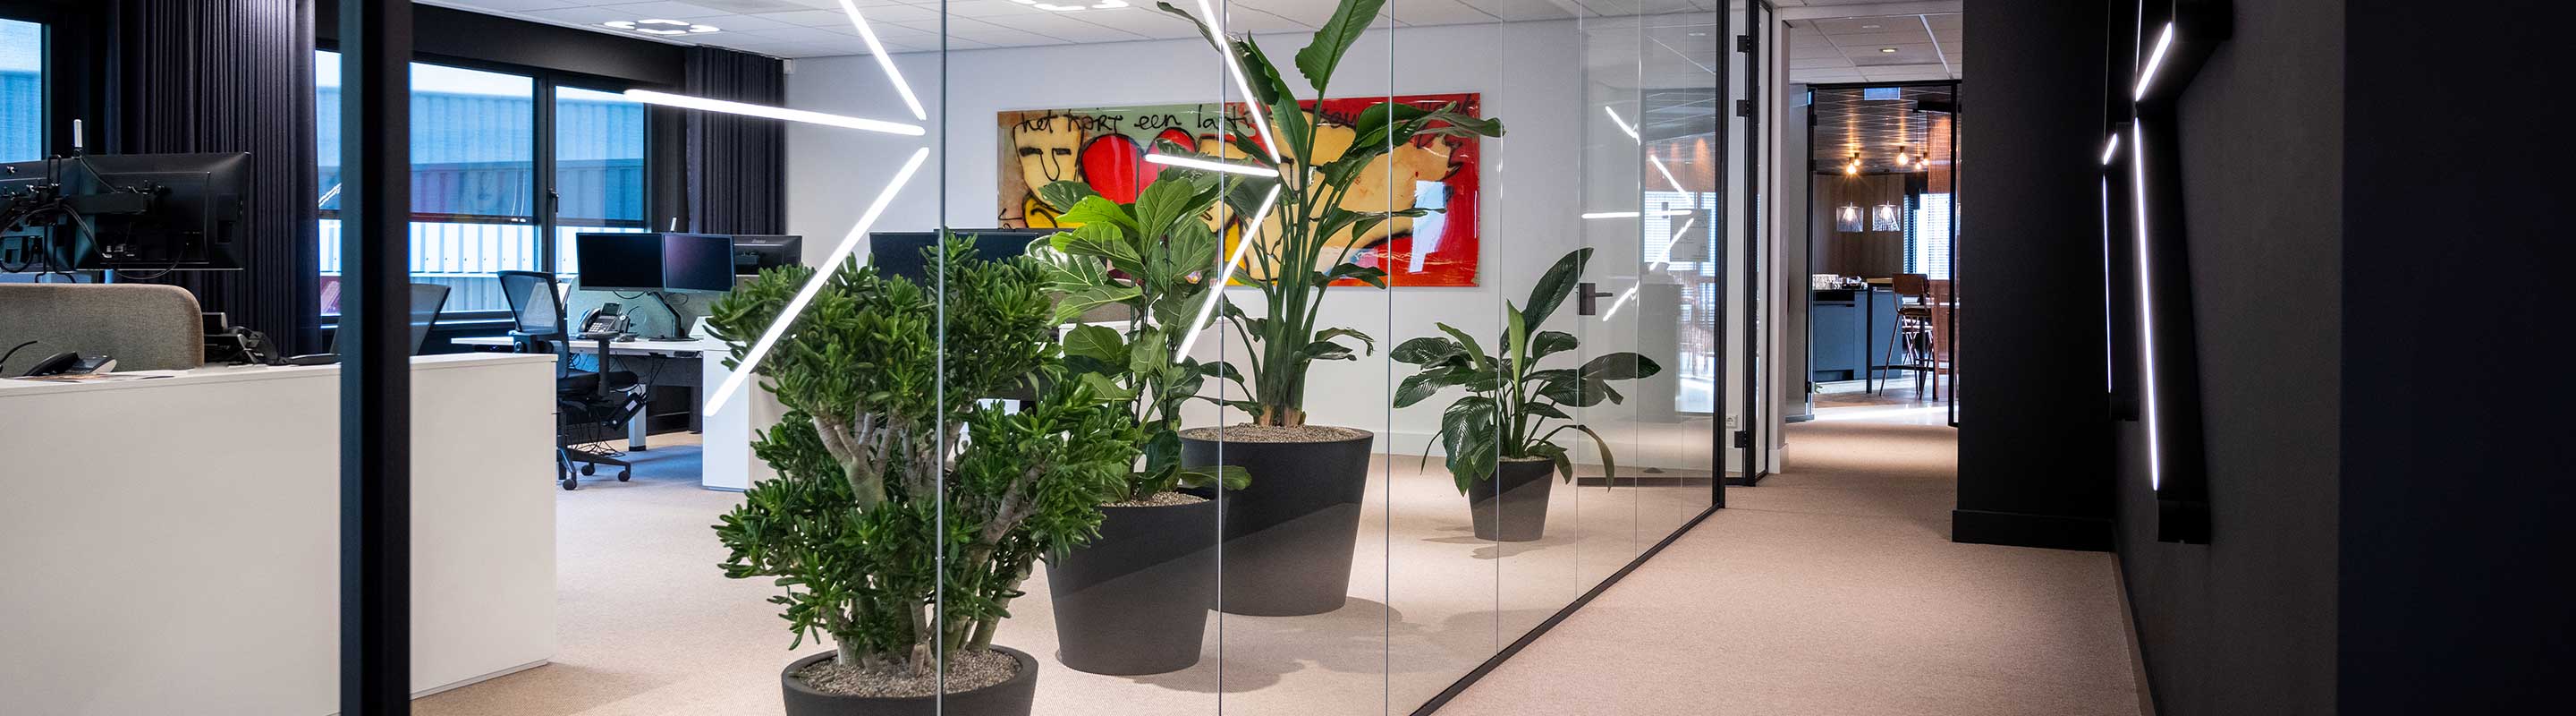 Paysagiste d'intérieur paris: La location de plantes pour embellir vos bureaux